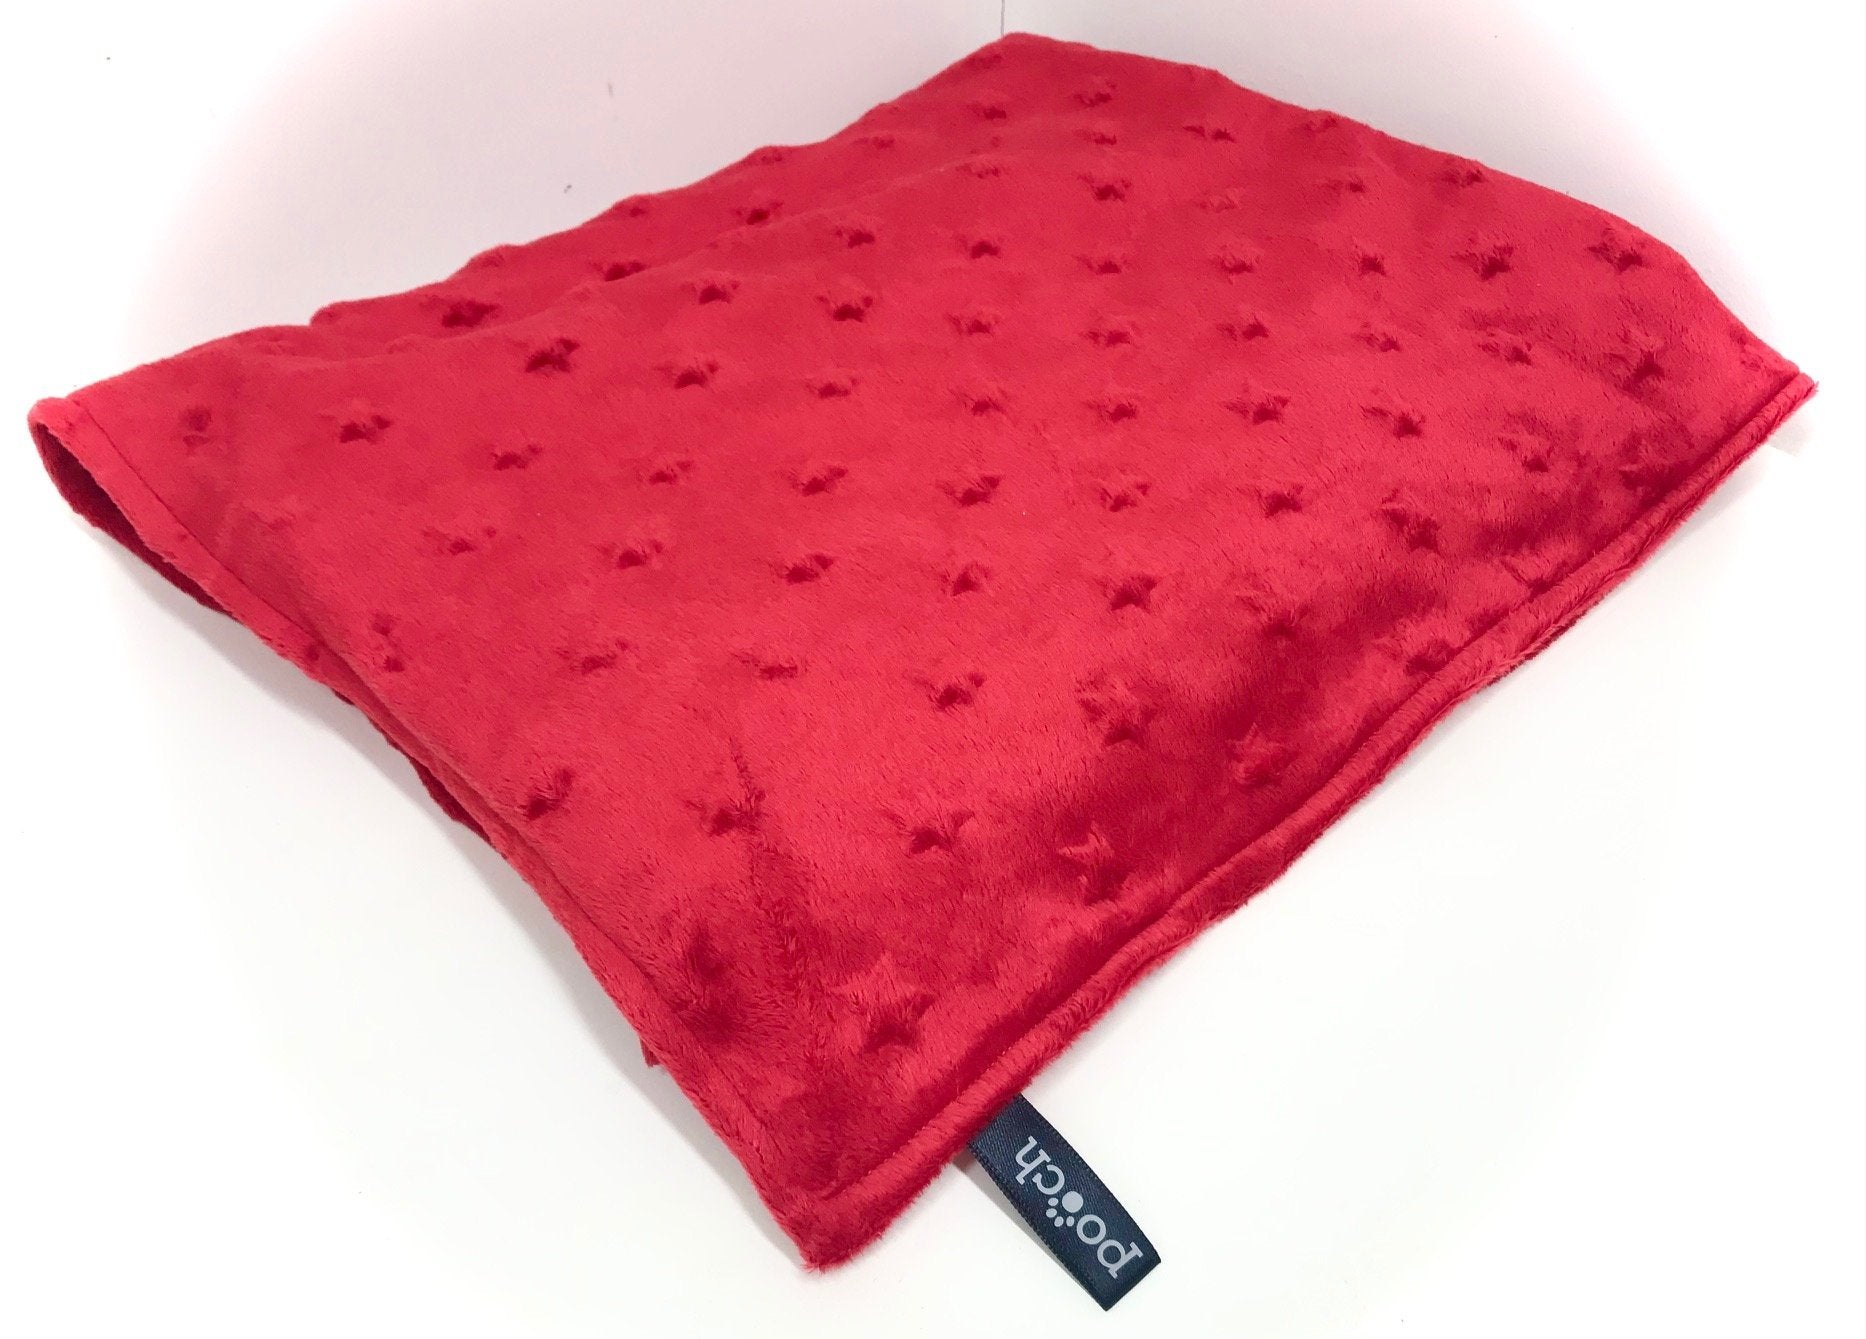 Red Star Dog Blanket - Pooch-